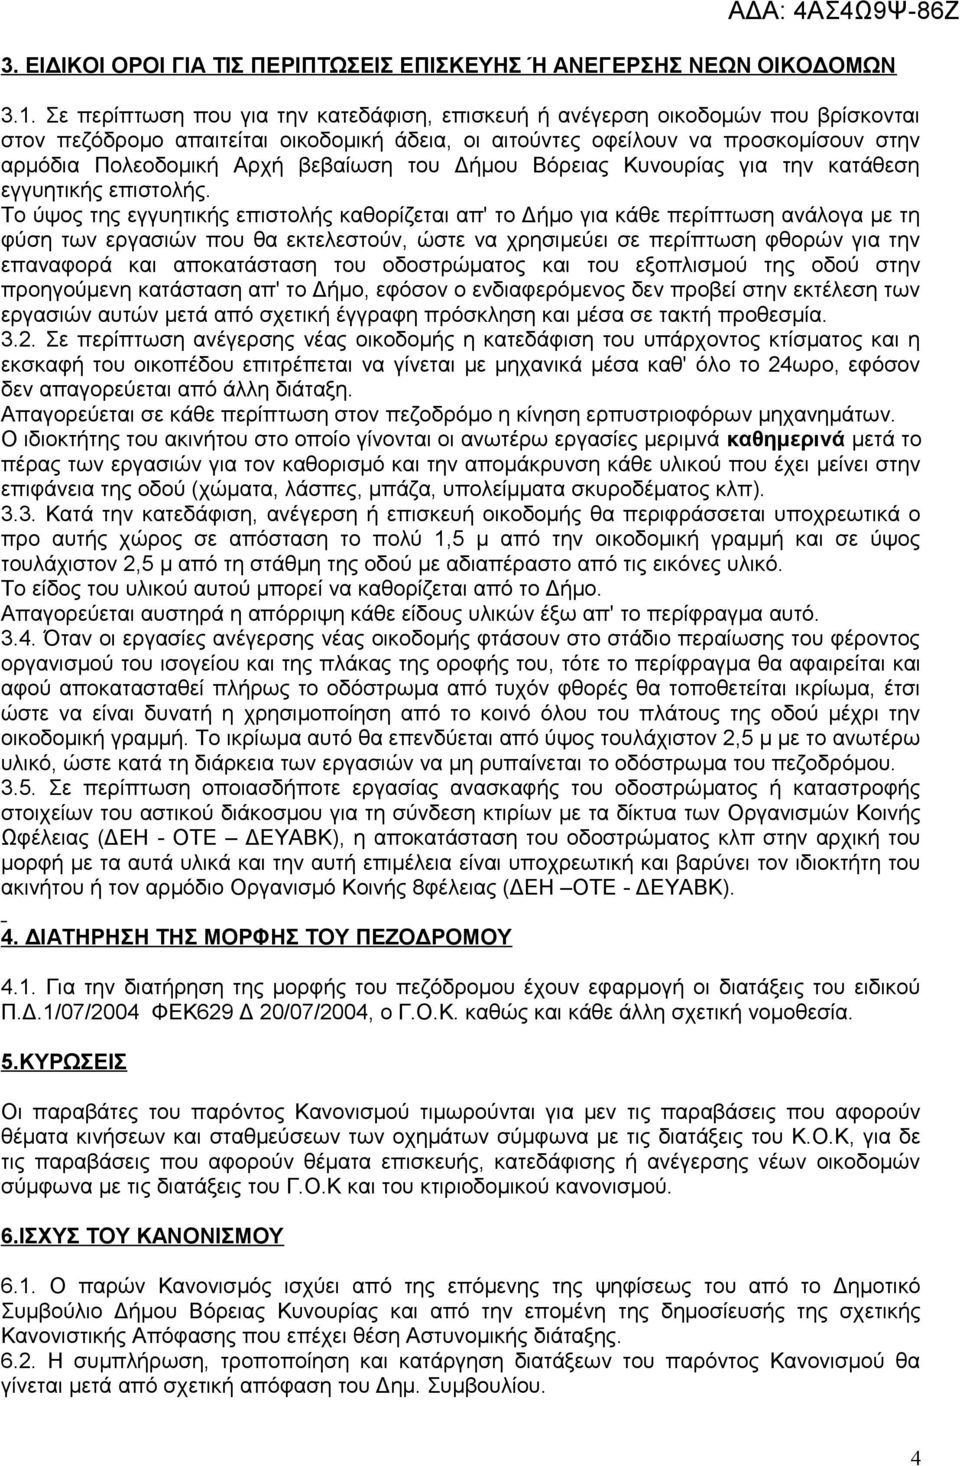 βεβαίωση του Δήμου Βόρειας Κυνουρίας για την κατάθεση εγγυητικής επιστολής.